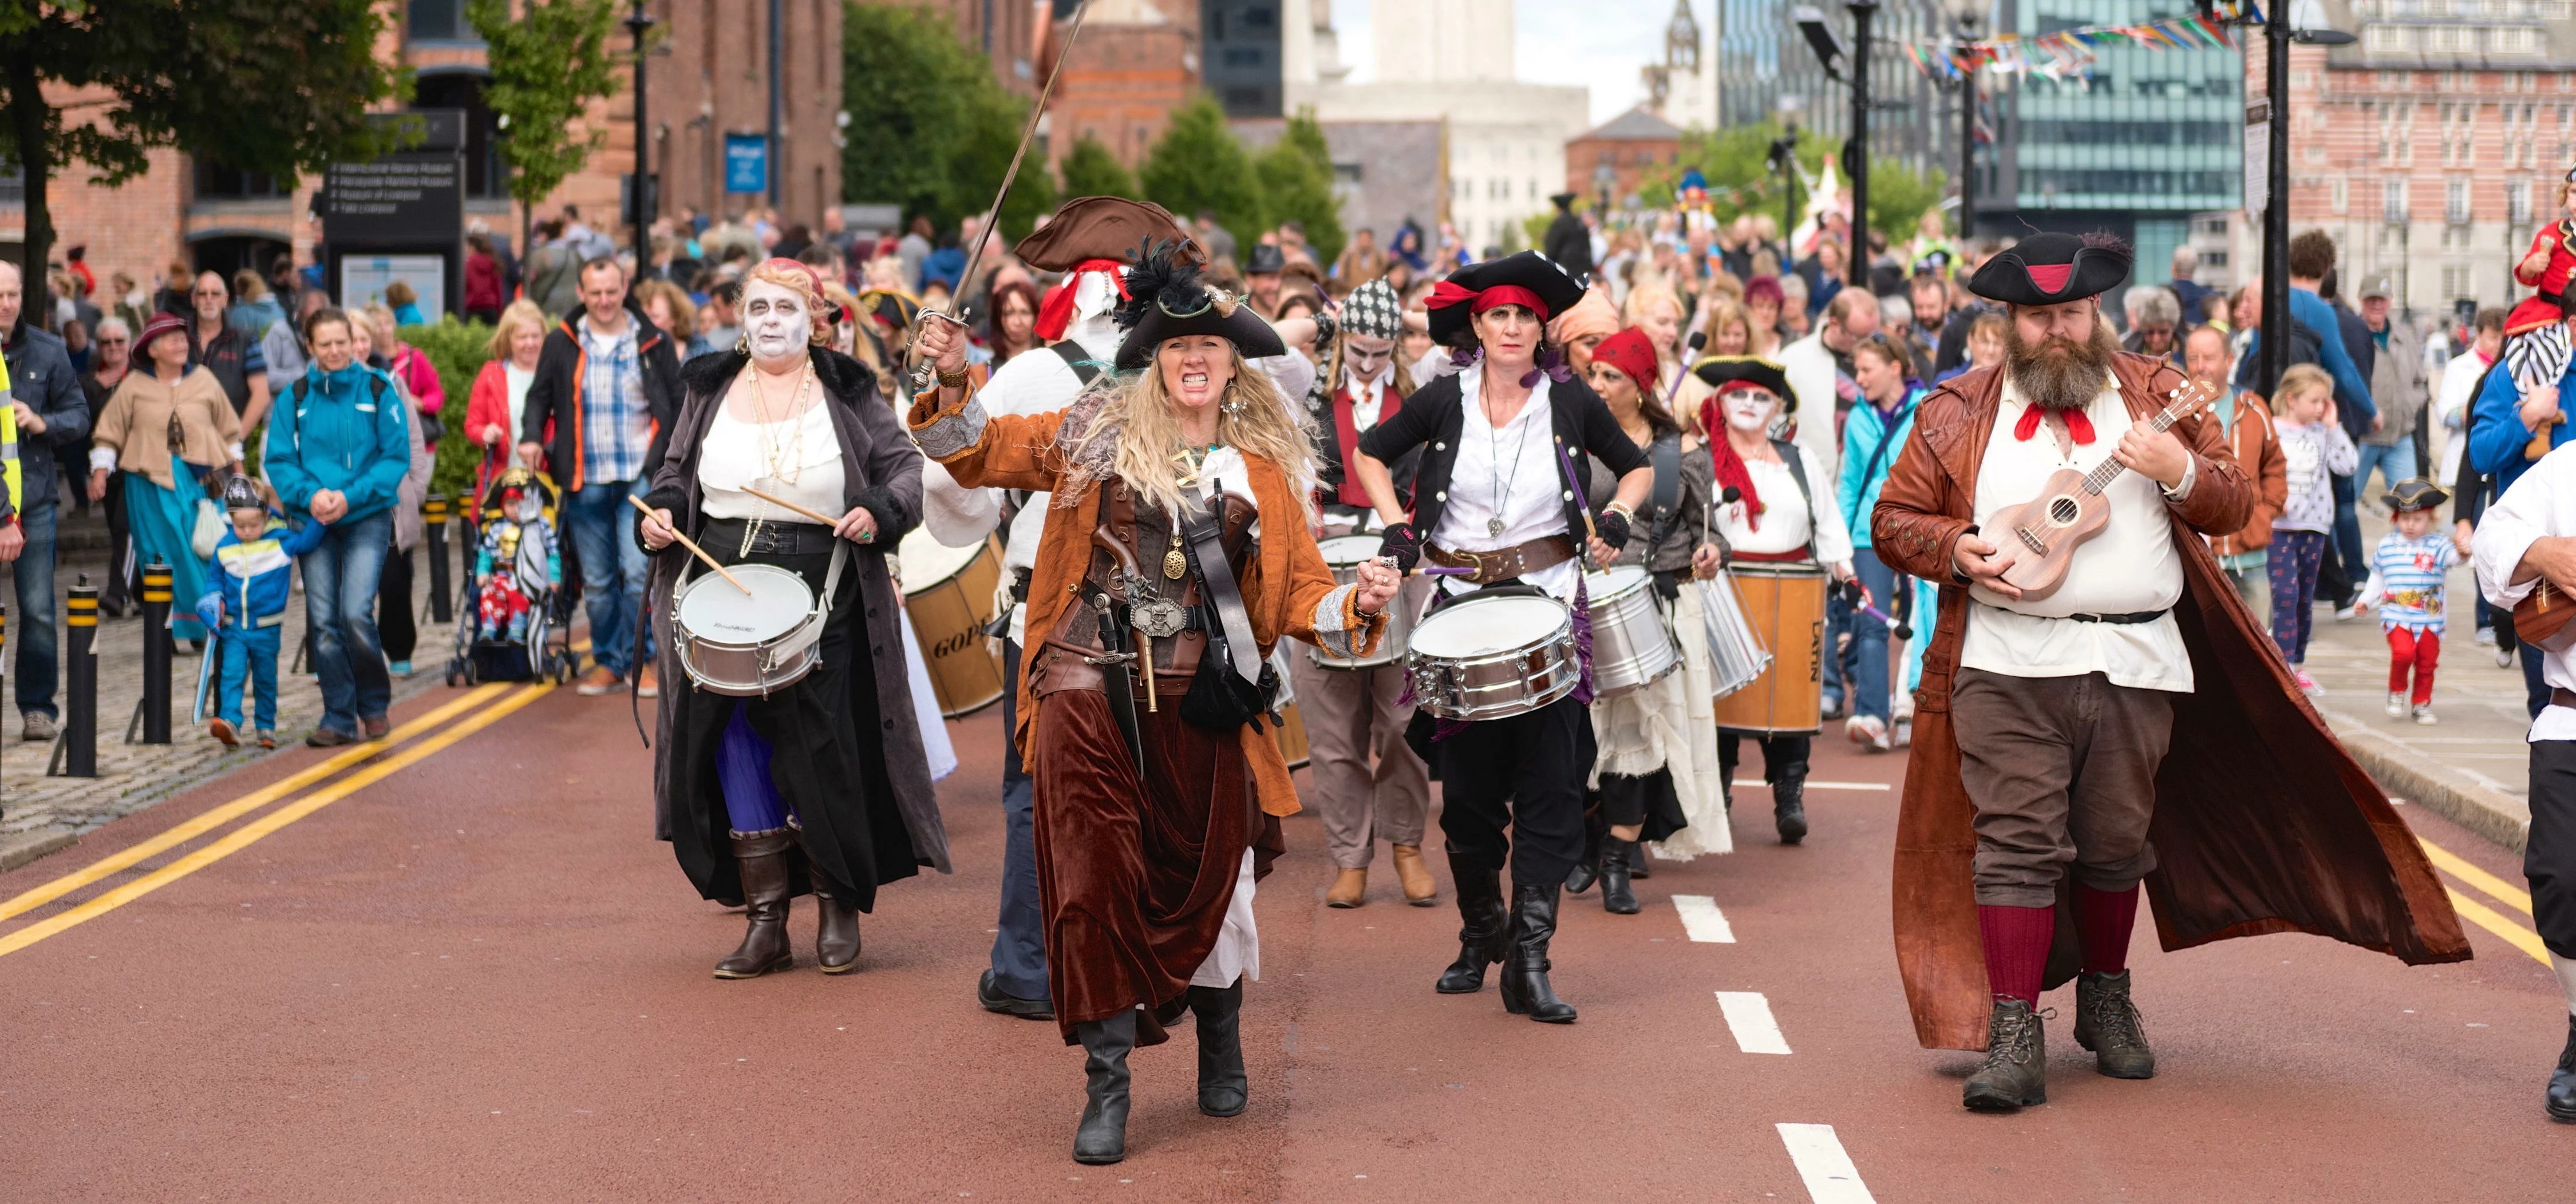 Pirate Festival Liverpool 2015